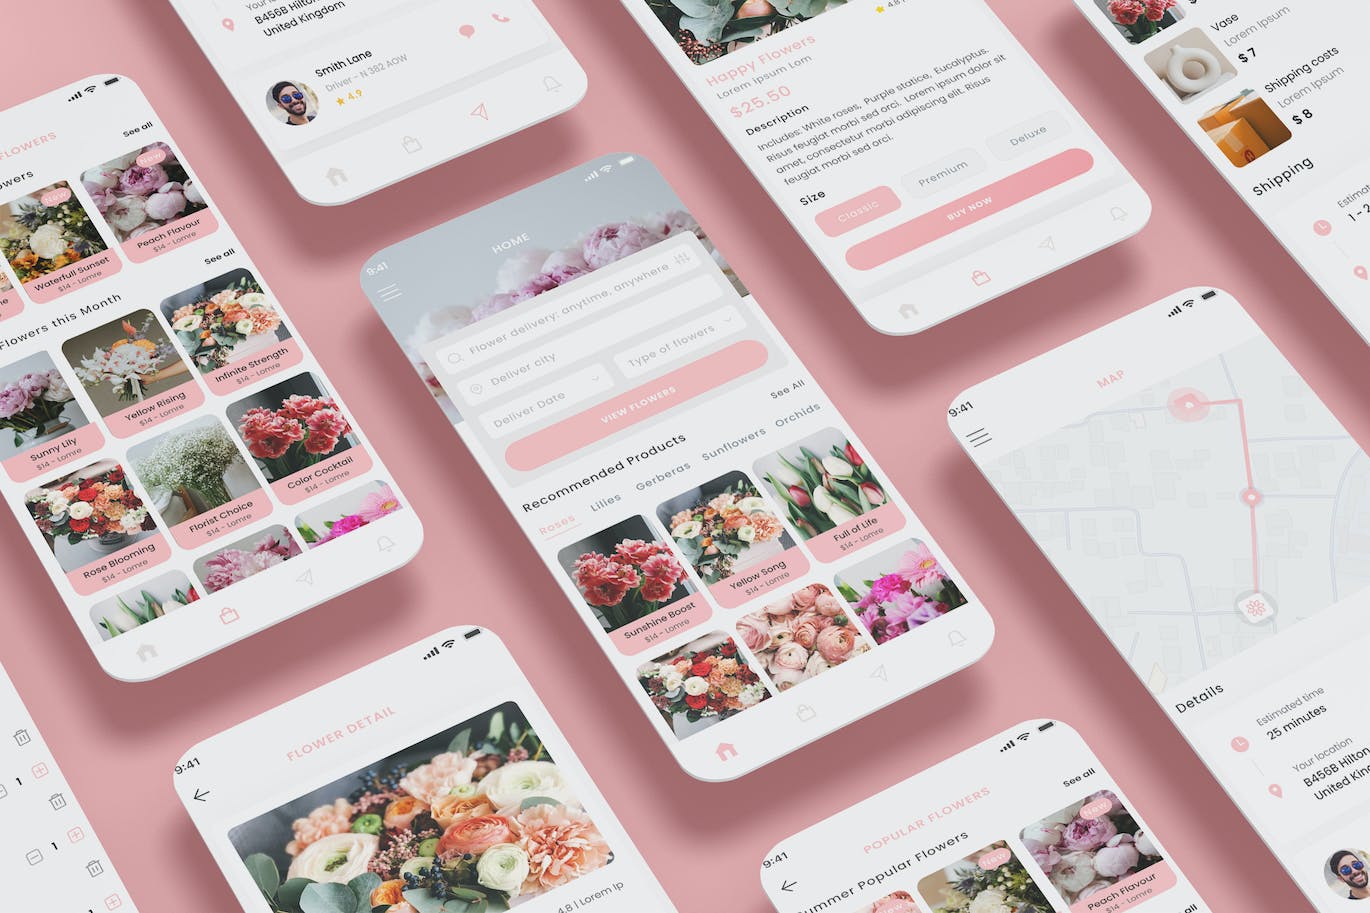 鲜花速递店和鲜花花束商店应用程序设计模板 Flowers Delivery Shop & Flower Bouquet Store App